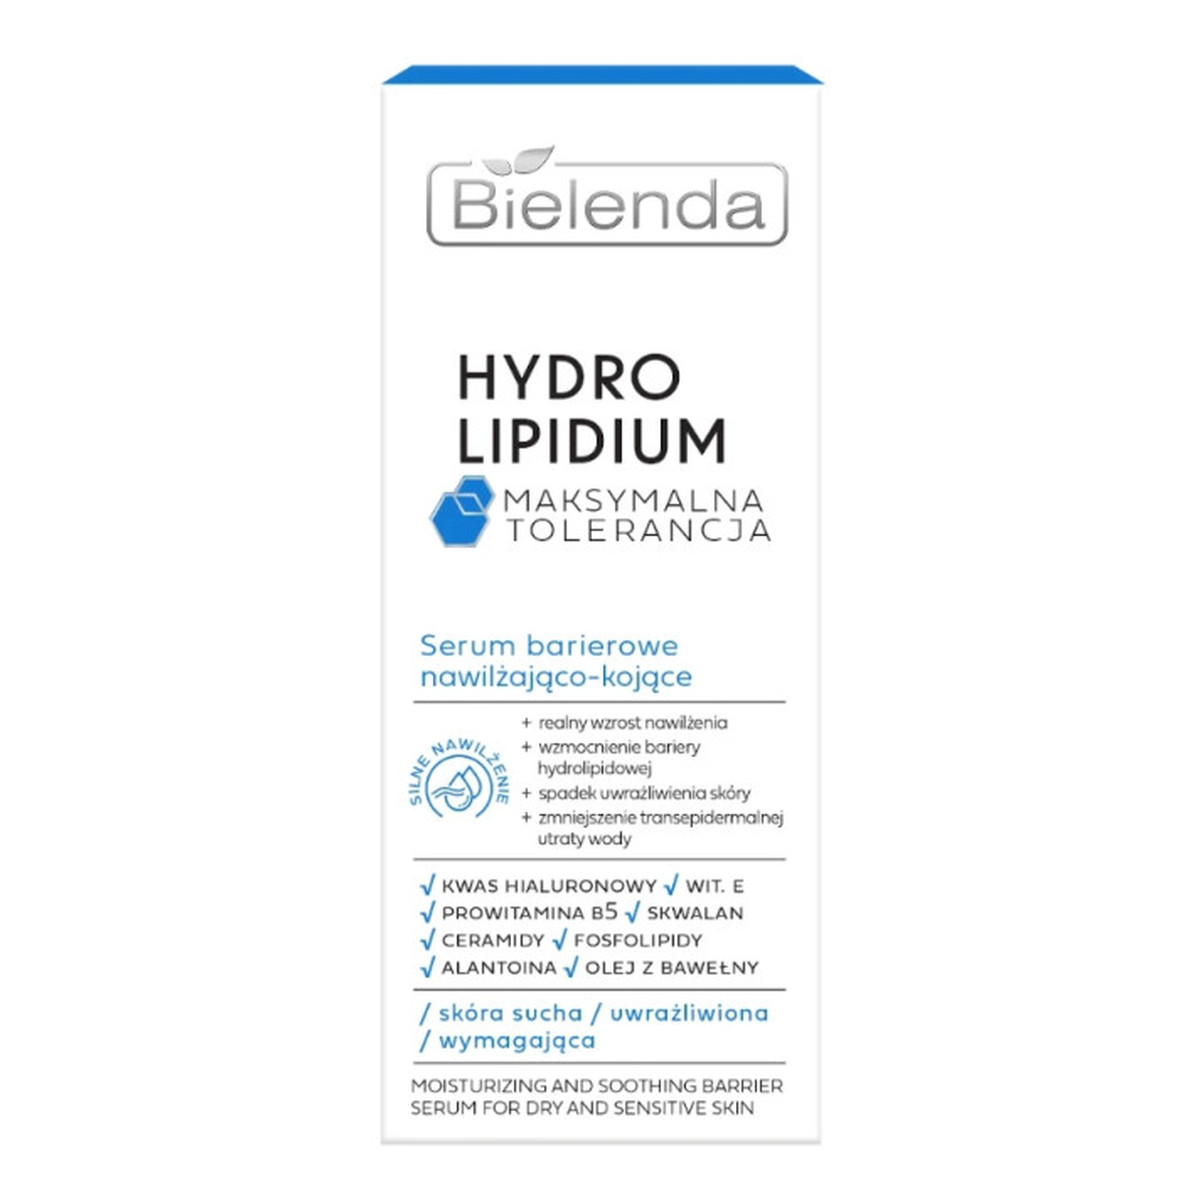 Bielenda Hydro Lipidium Serum barierowe nawilżająco kojące - skóra sucha uwrażliwiona 30ml